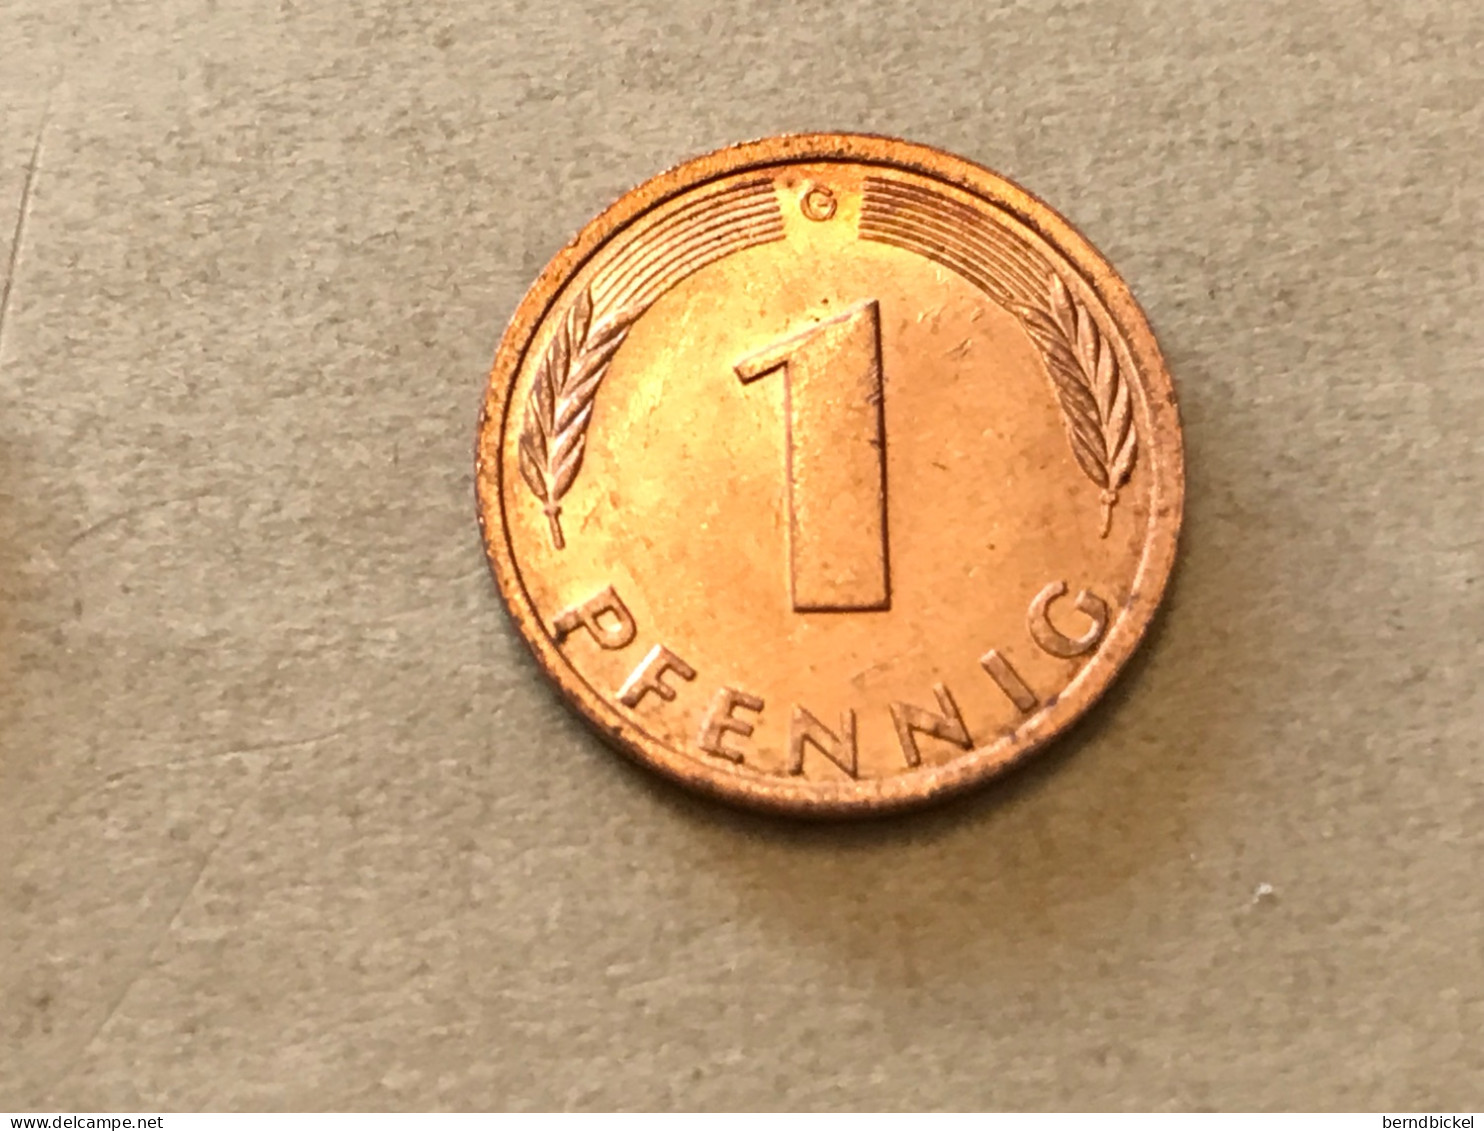 Münze Münzen Umlaufmünze Deutschland BRD 1 Pfennig 1982 Münzzeichen G - 1 Pfennig